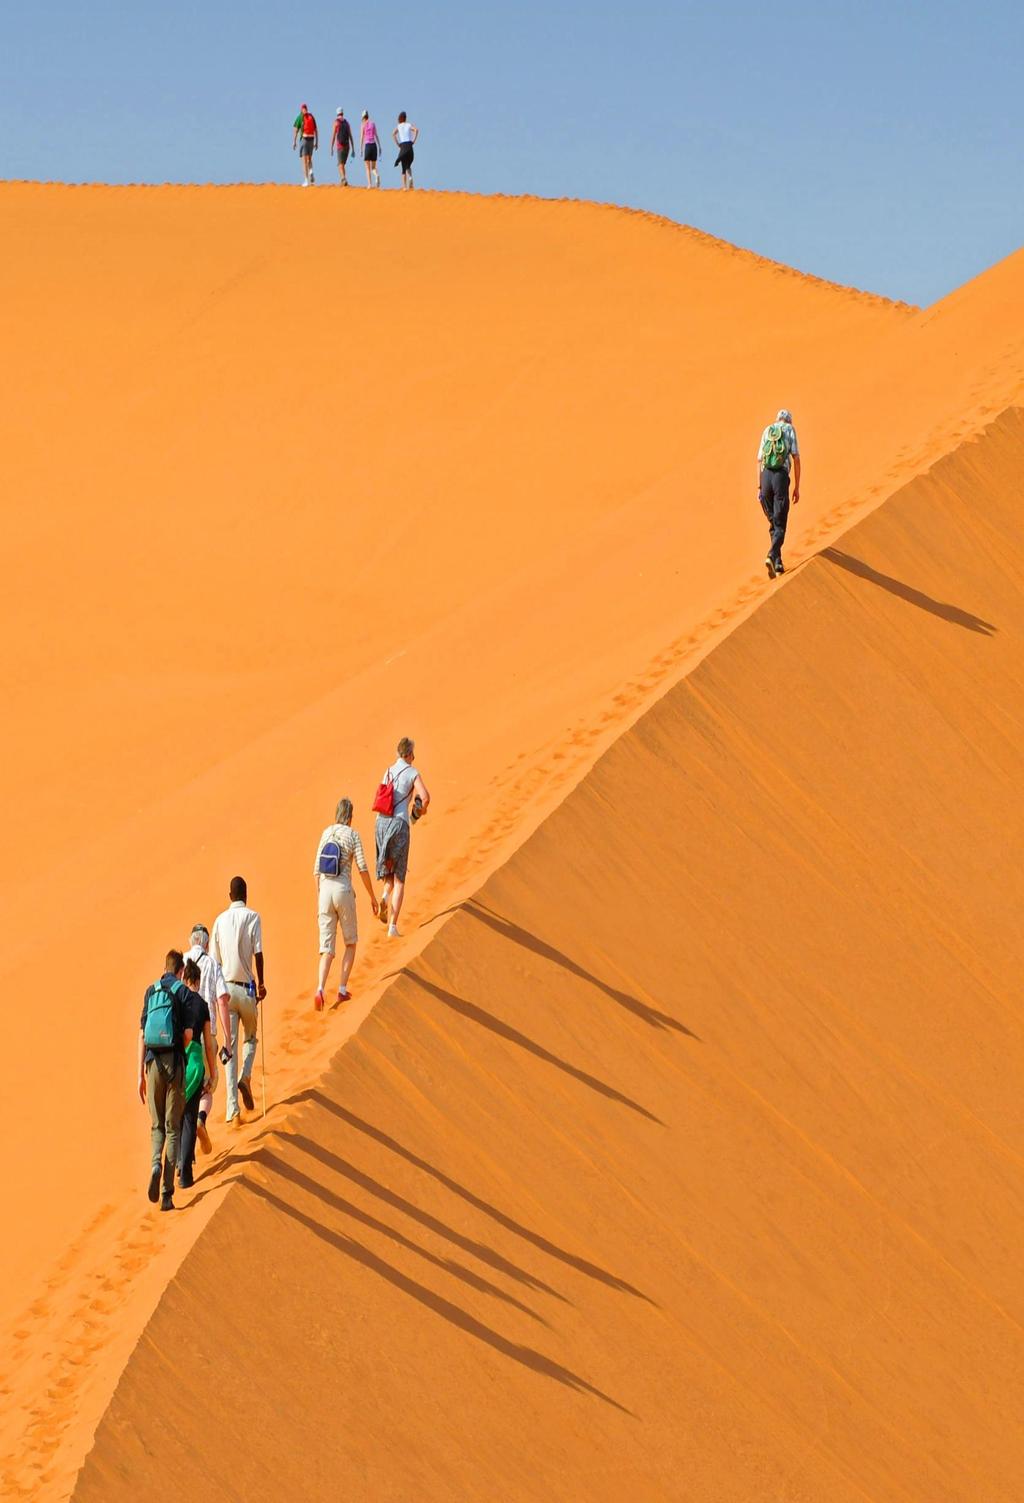 Εμπειρία Να περπατάς ξυπόλυτος στην ακτογραμμή της ερήμου Ναμίμπ Απόλυτη άρνηση της ευθείας, η έρημος Ναμίμπ, με τις υψηλότερες και ωραιότερες αμμοθίνες στον κόσμο, θεωρείται από τις αρχαιότερες του